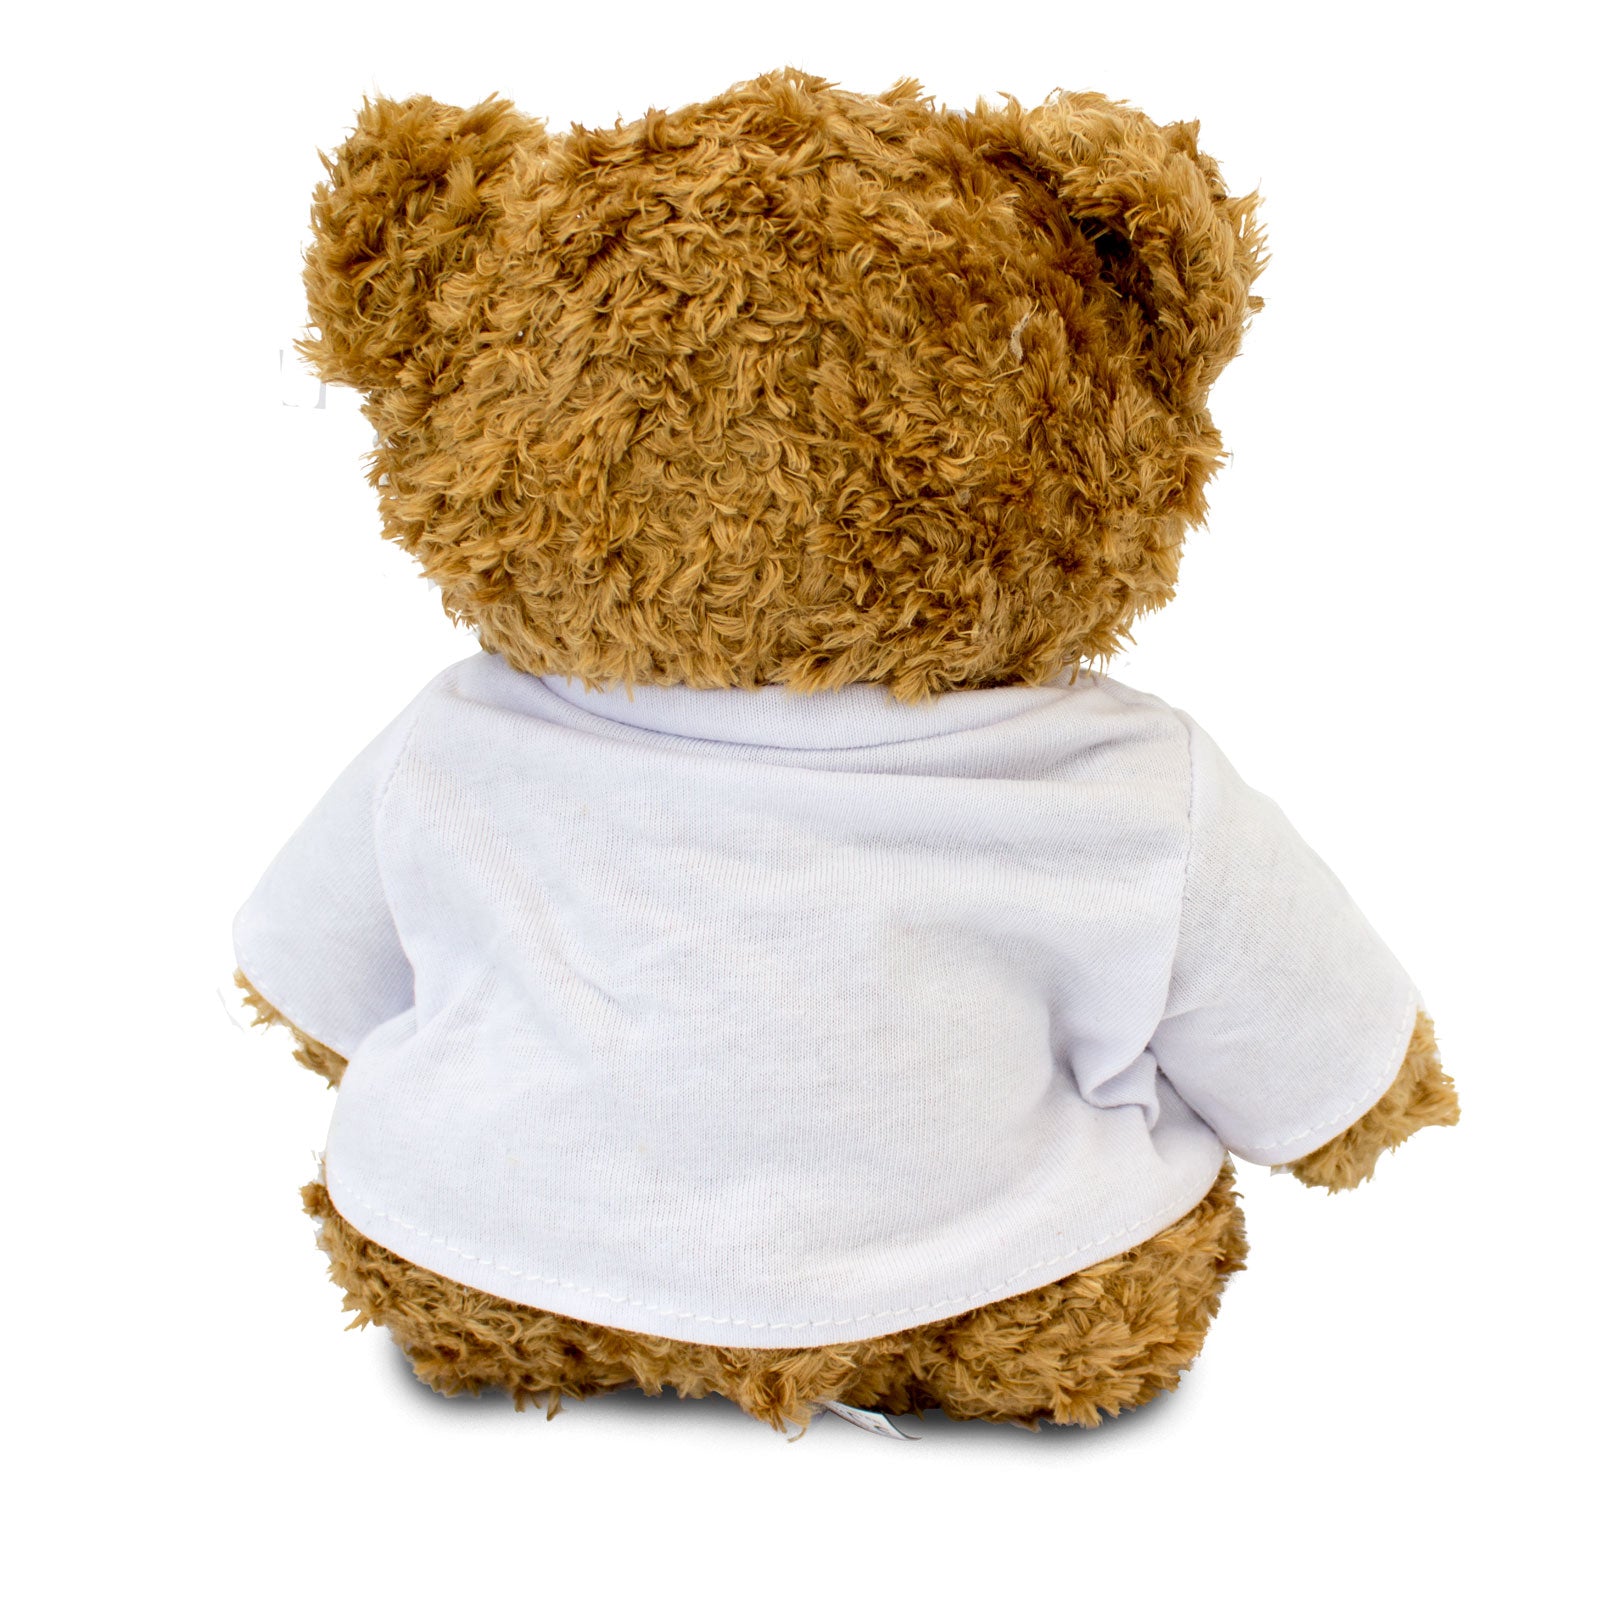 Get Well Soon Jove - Teddy Bear